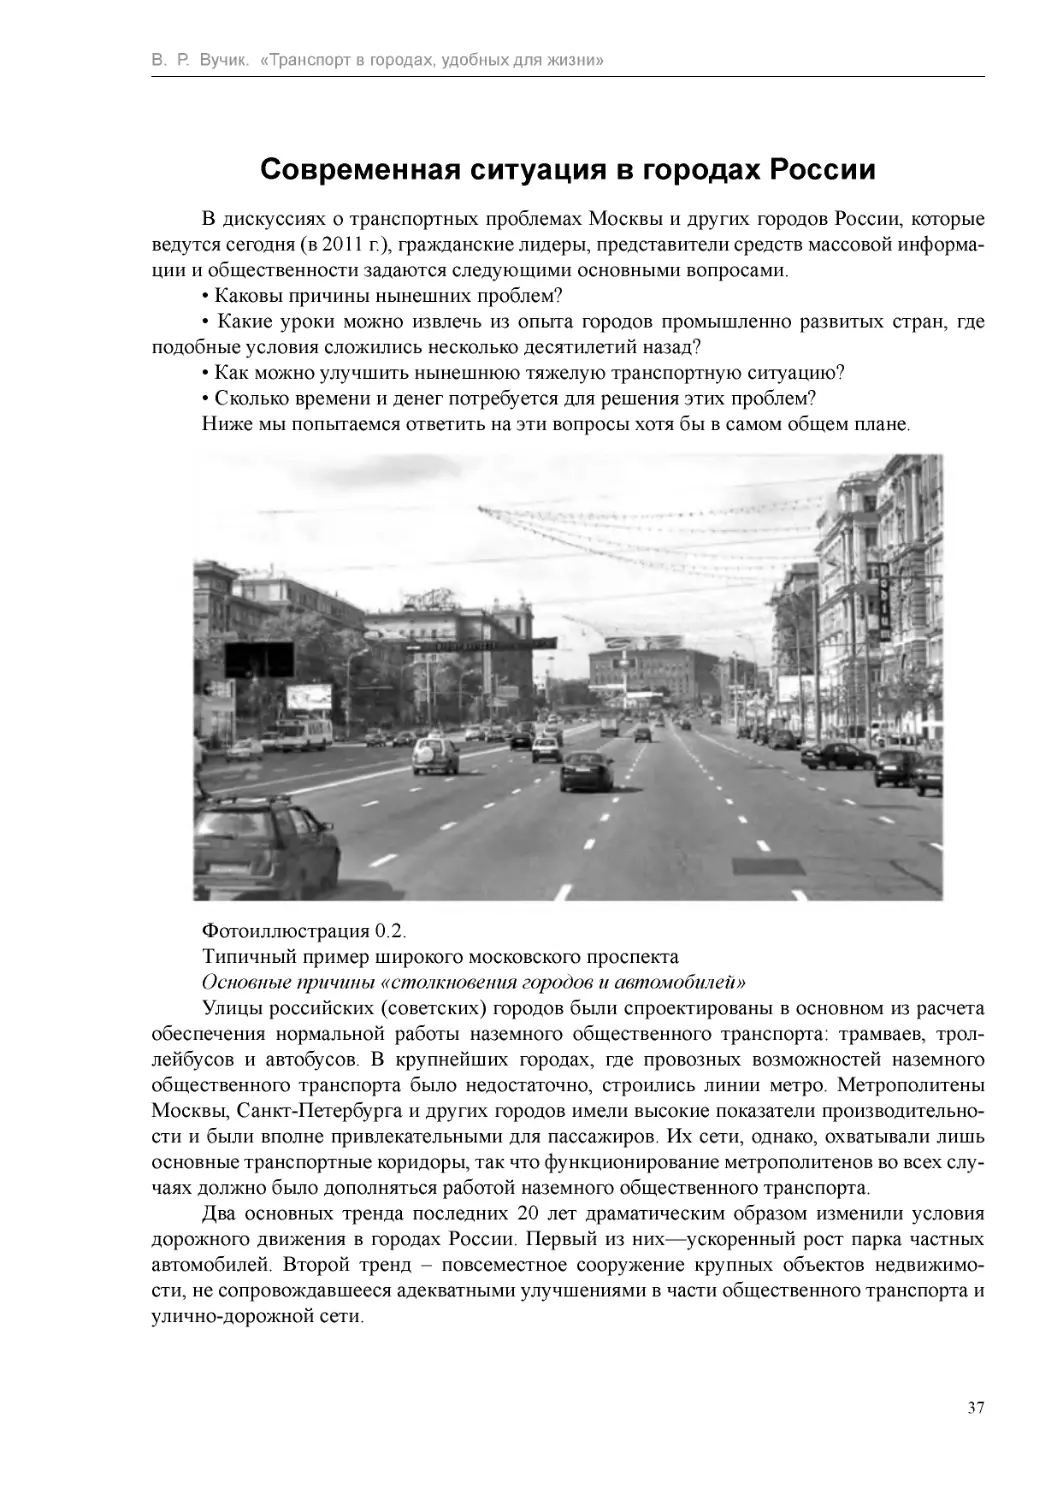 Современная ситуация в городах России